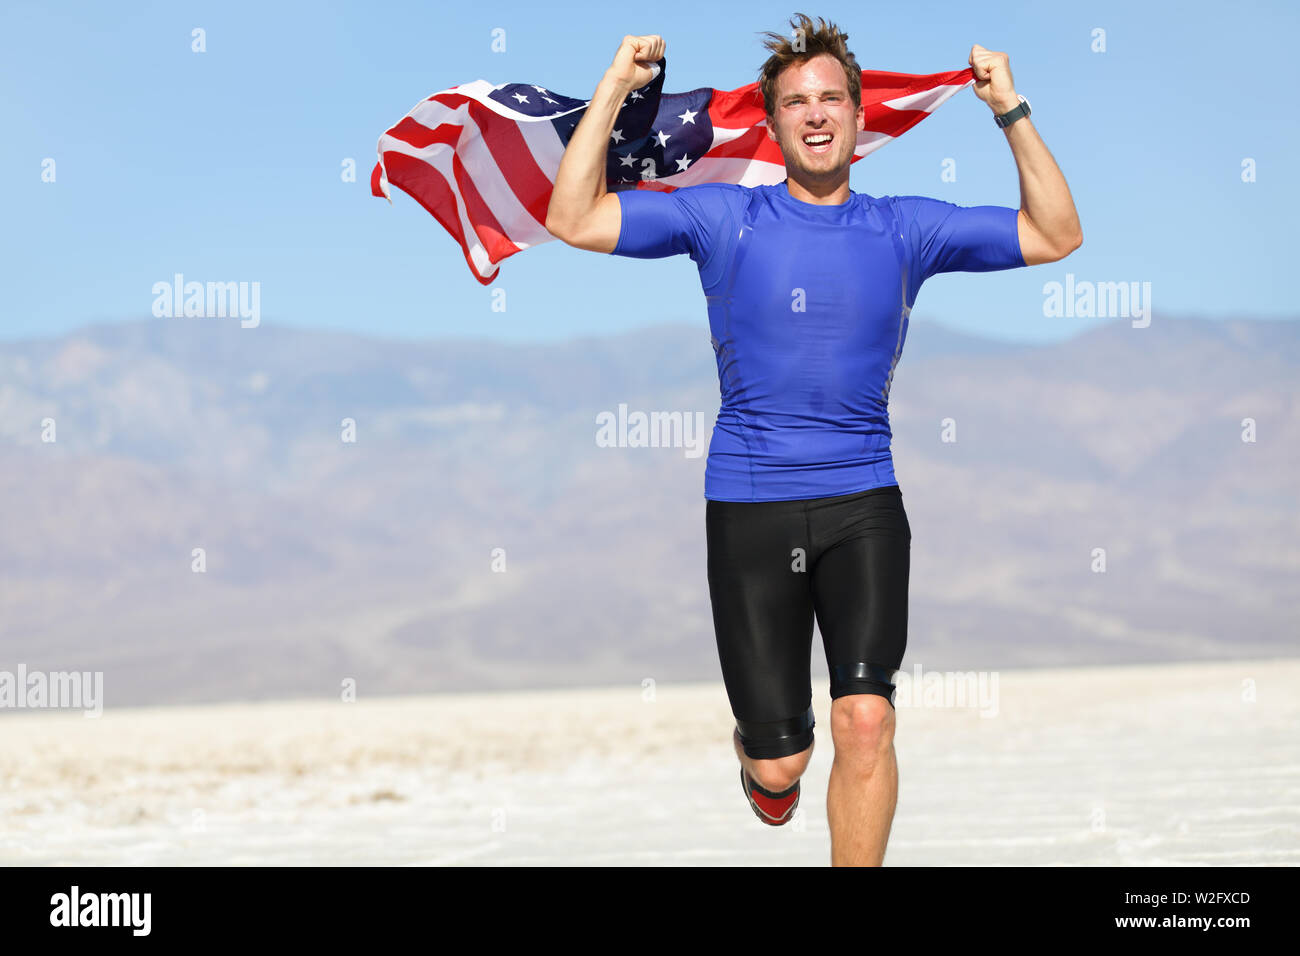 Runner Athlet Mann mit der amerikanischen Flagge - USA. Laufen Sport Fitness Mann mit US-Flagge. Athletischen jungen Mann zujubeln und läuft mit der amerikanischen Flagge in die Luft erhoben. Stockfoto